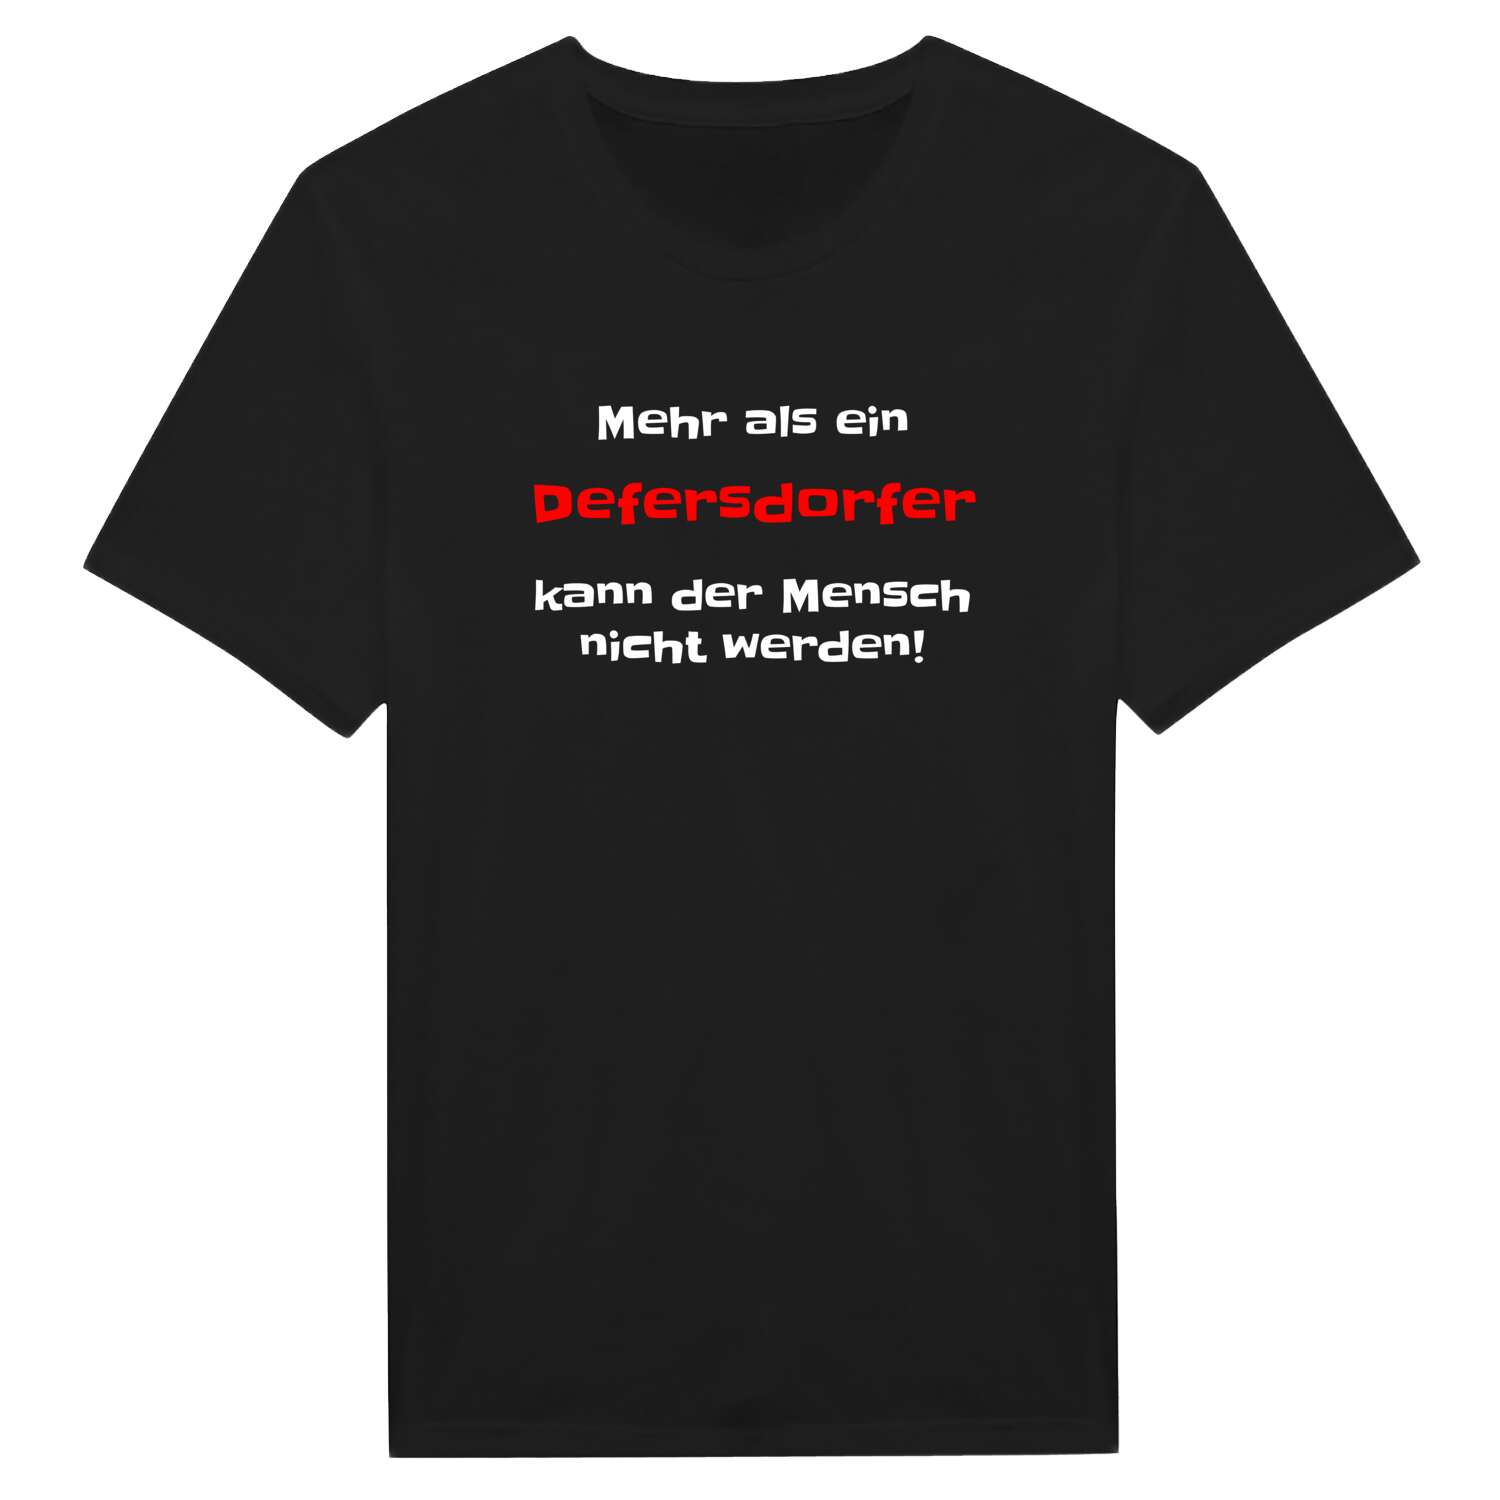 Defersdorf T-Shirt »Mehr als ein«